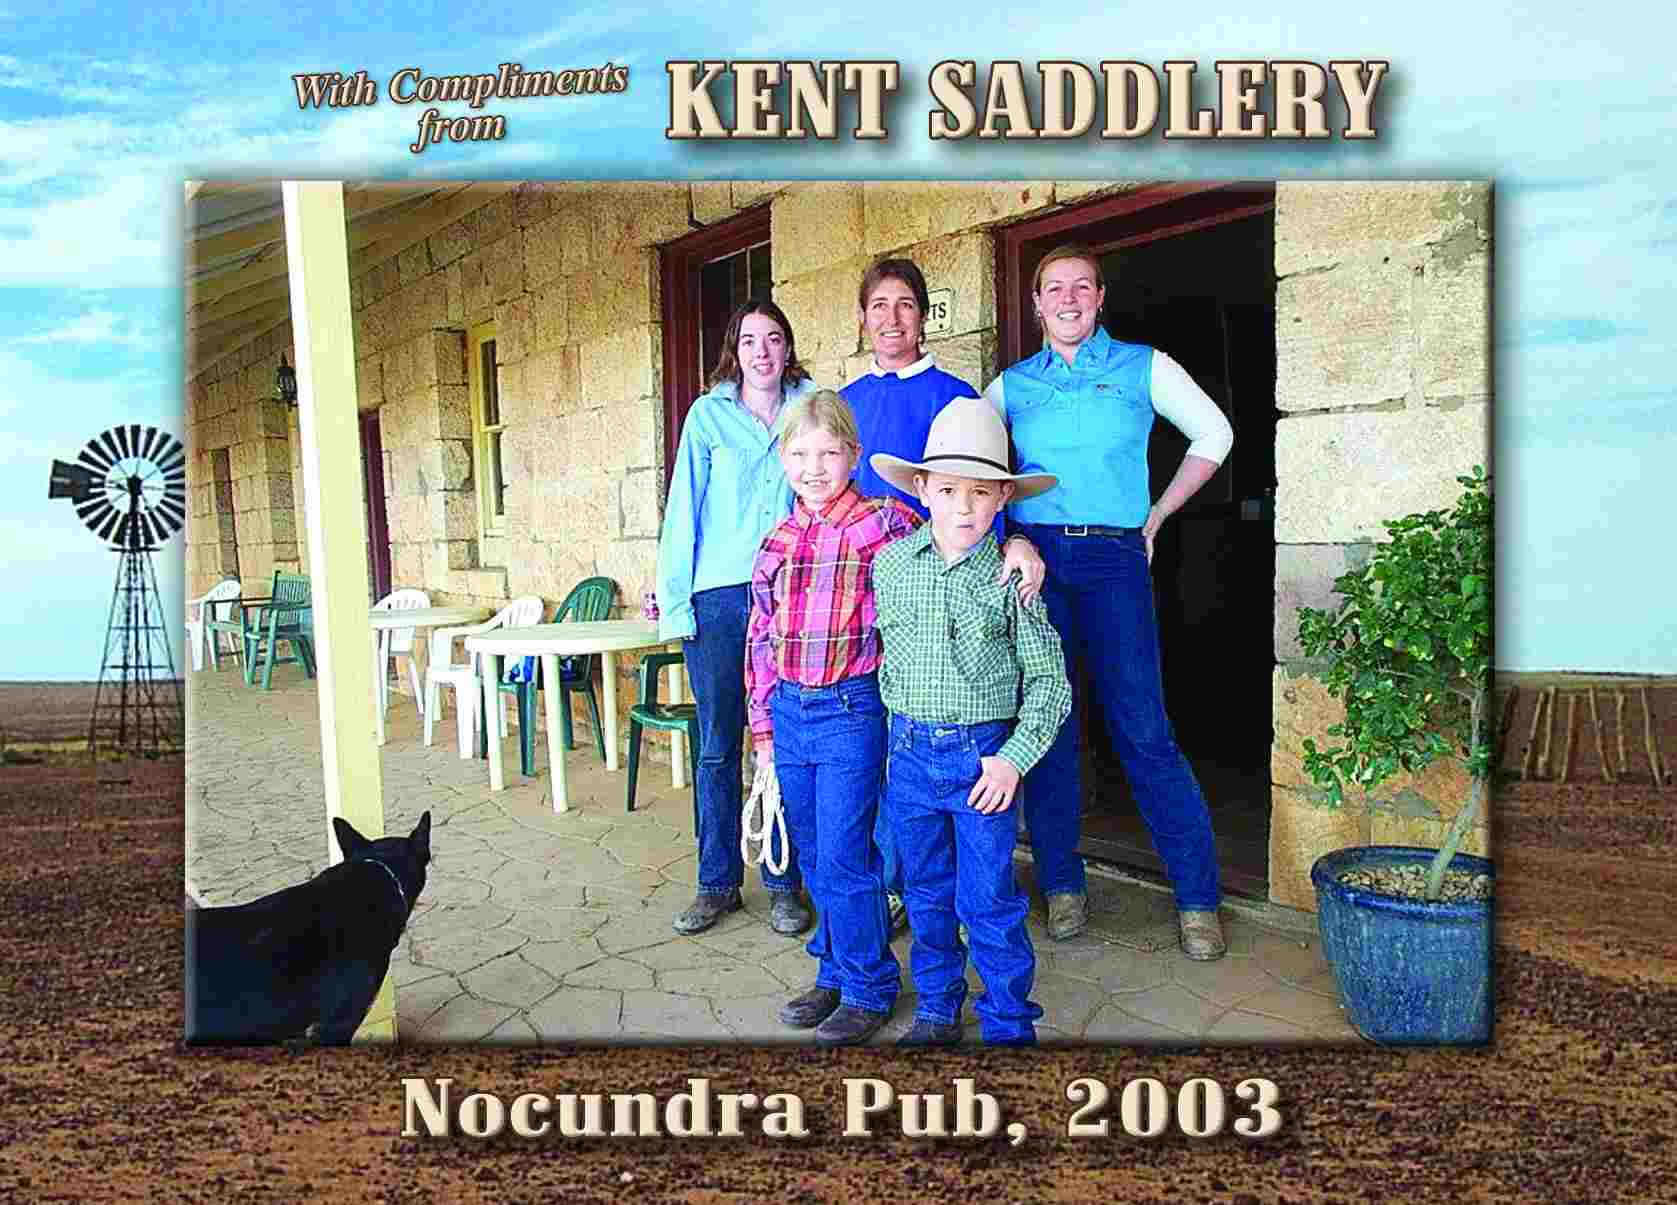 Queensland - Noccundra Pub 8